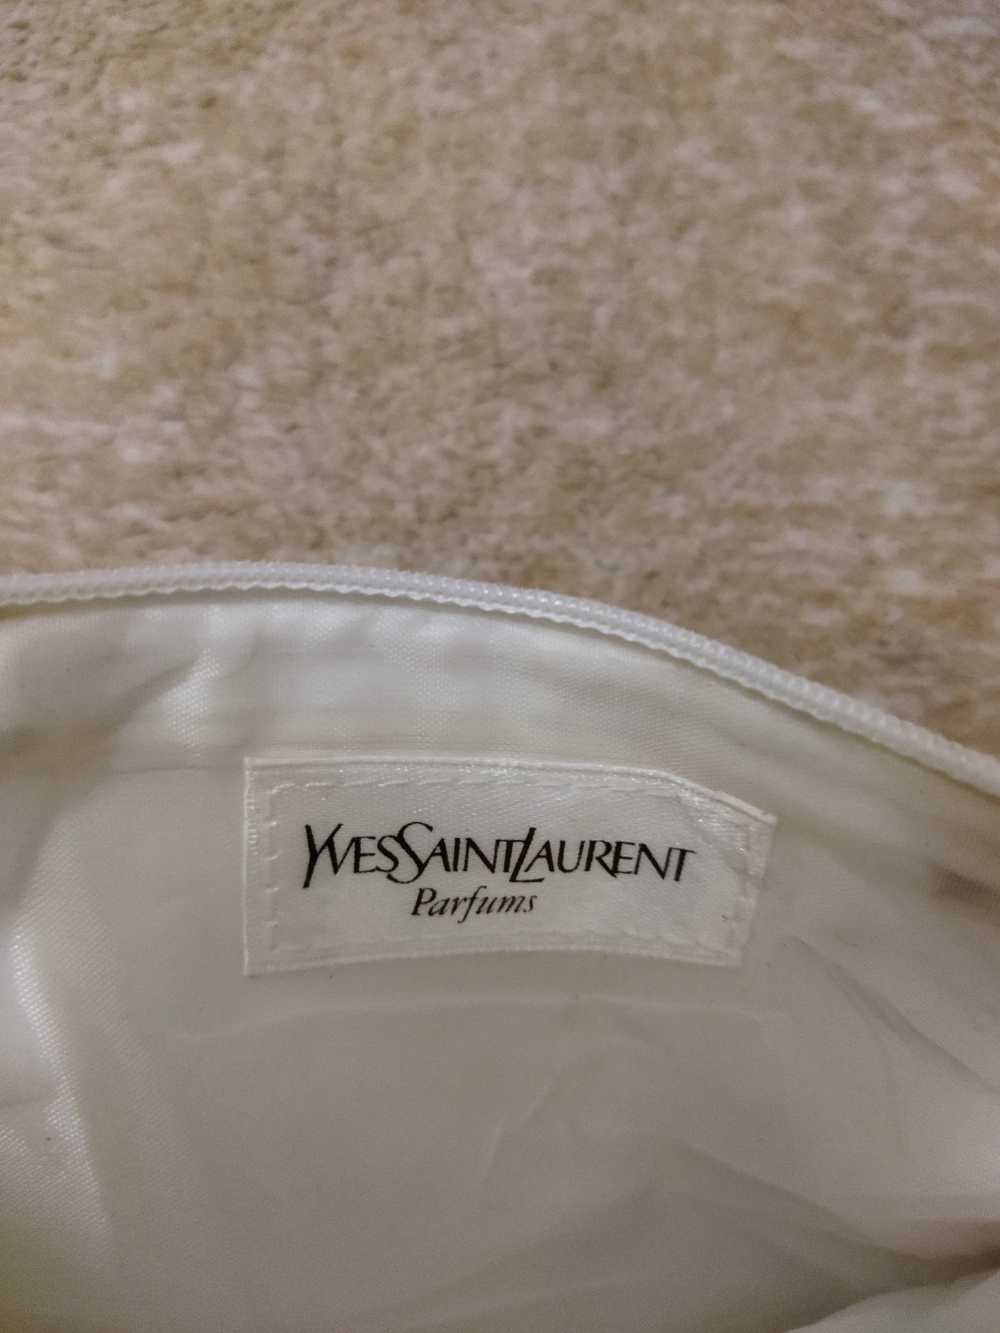 Yves Saint Laurent Yves Saint Laurent Parfums Bag - image 3